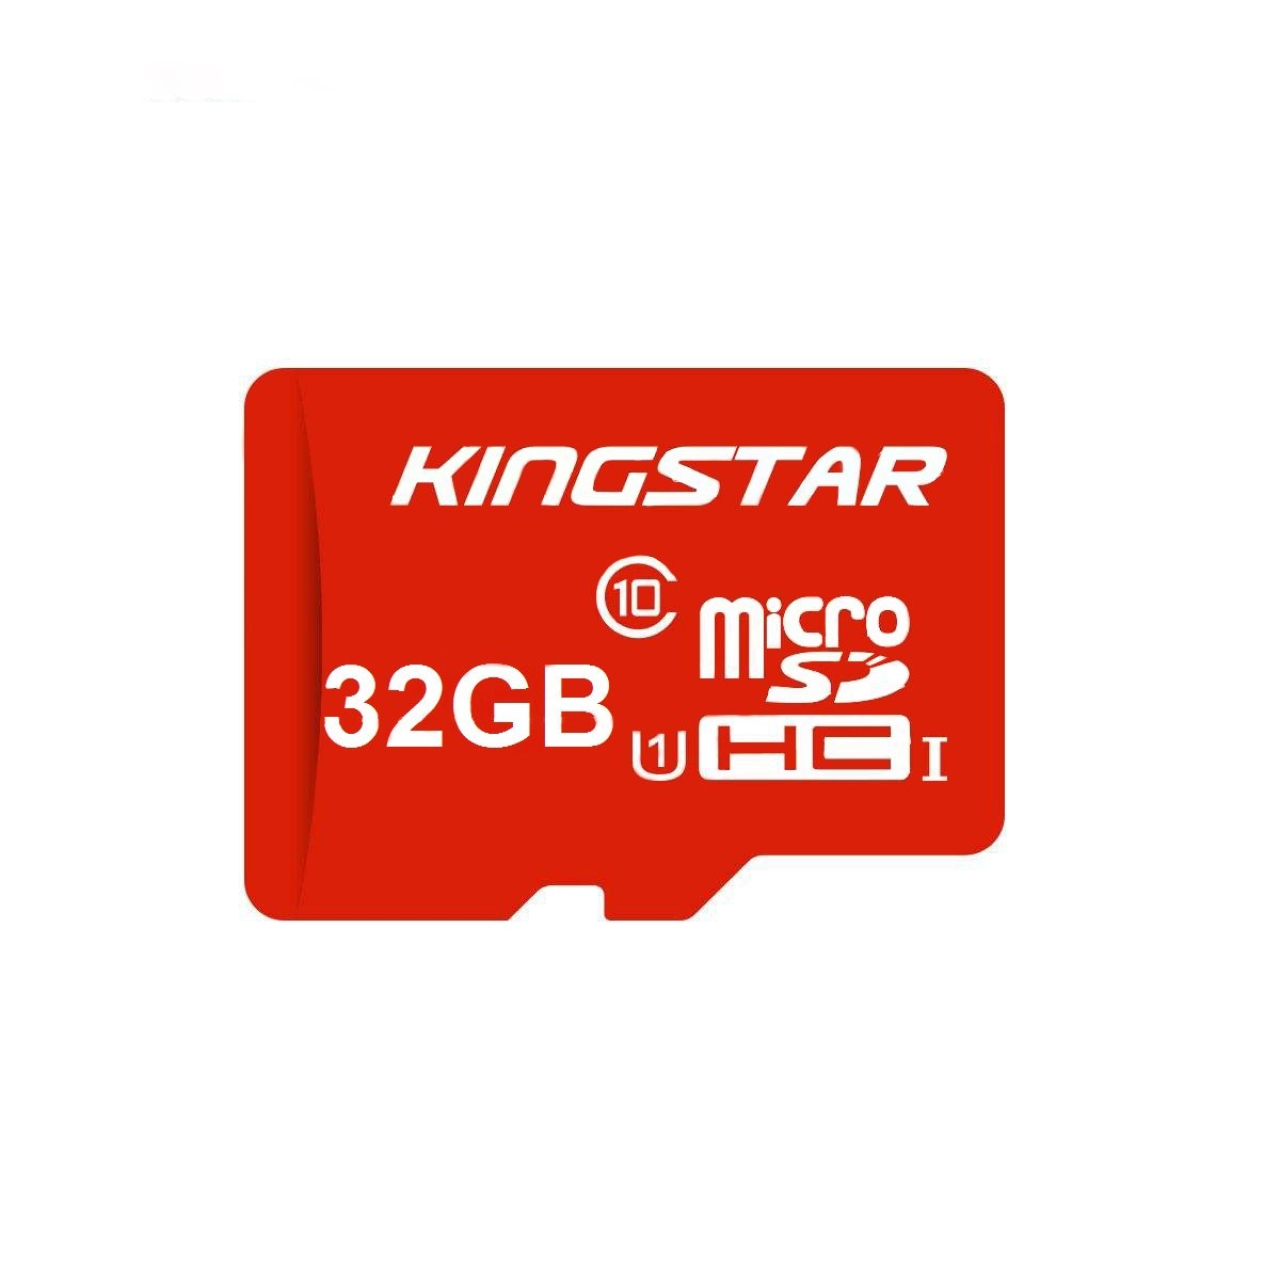 کارت حافظه microSDHC کینگ استار کلاس 10 استاندارد UHS-I U1 سرعت 85MBps  ظرفیت 32 گیگابایت